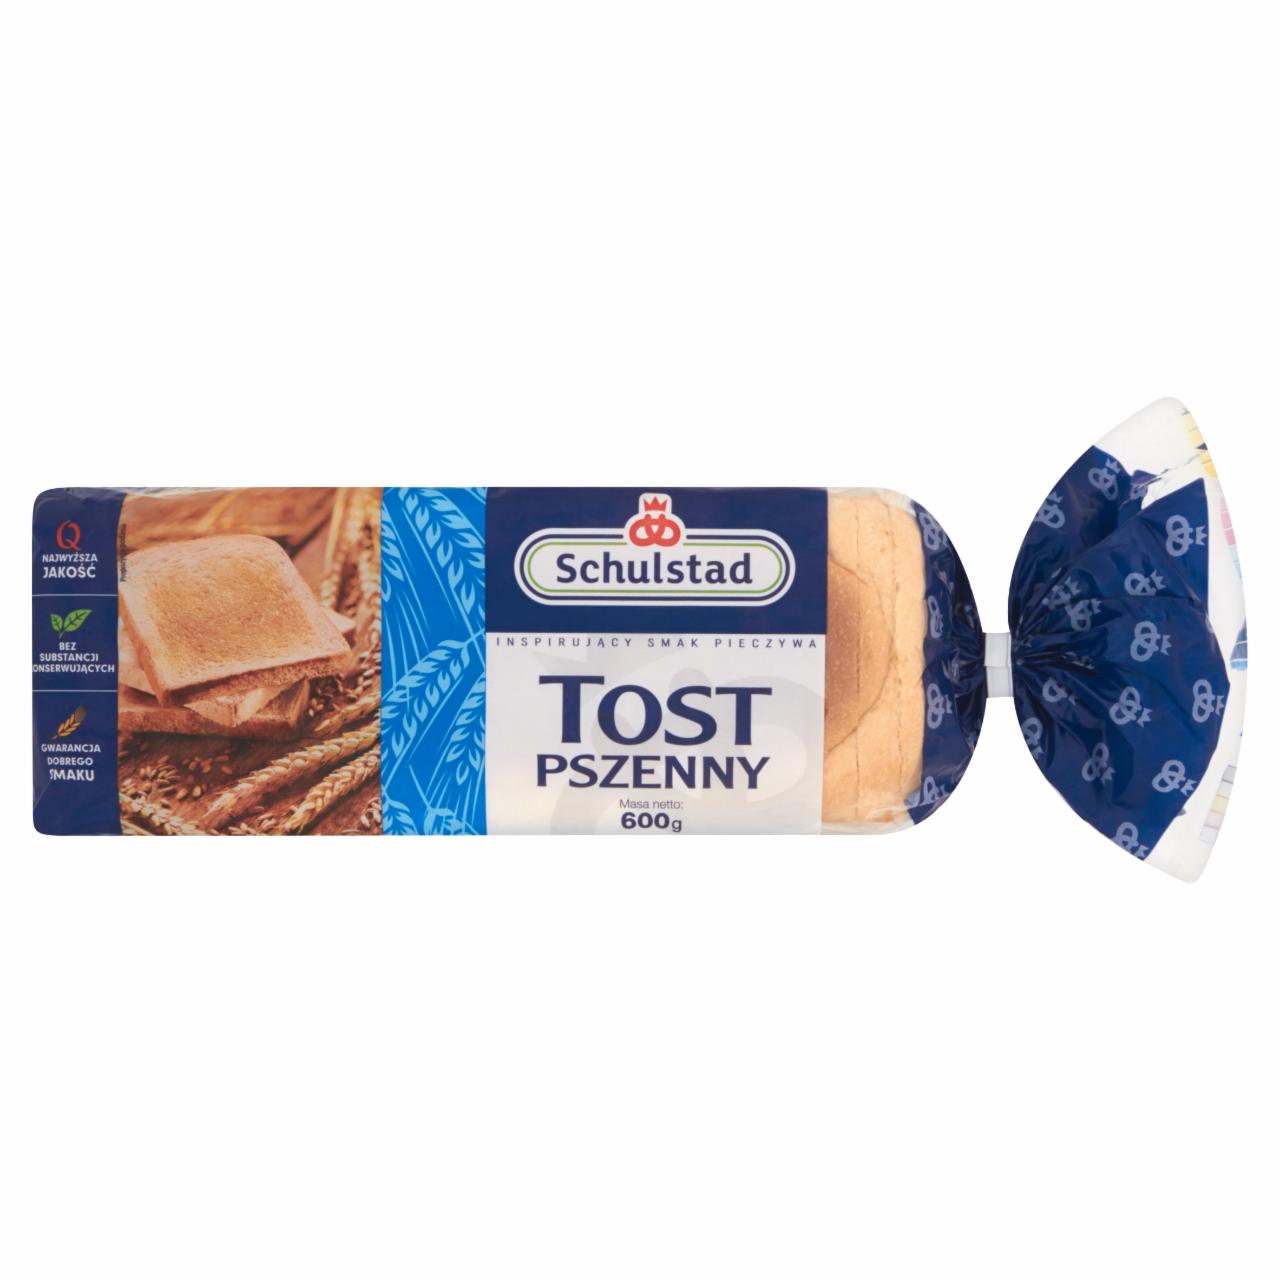 Zdjęcia - Schulstad Tost pszenny Chleb tostowy 600 g